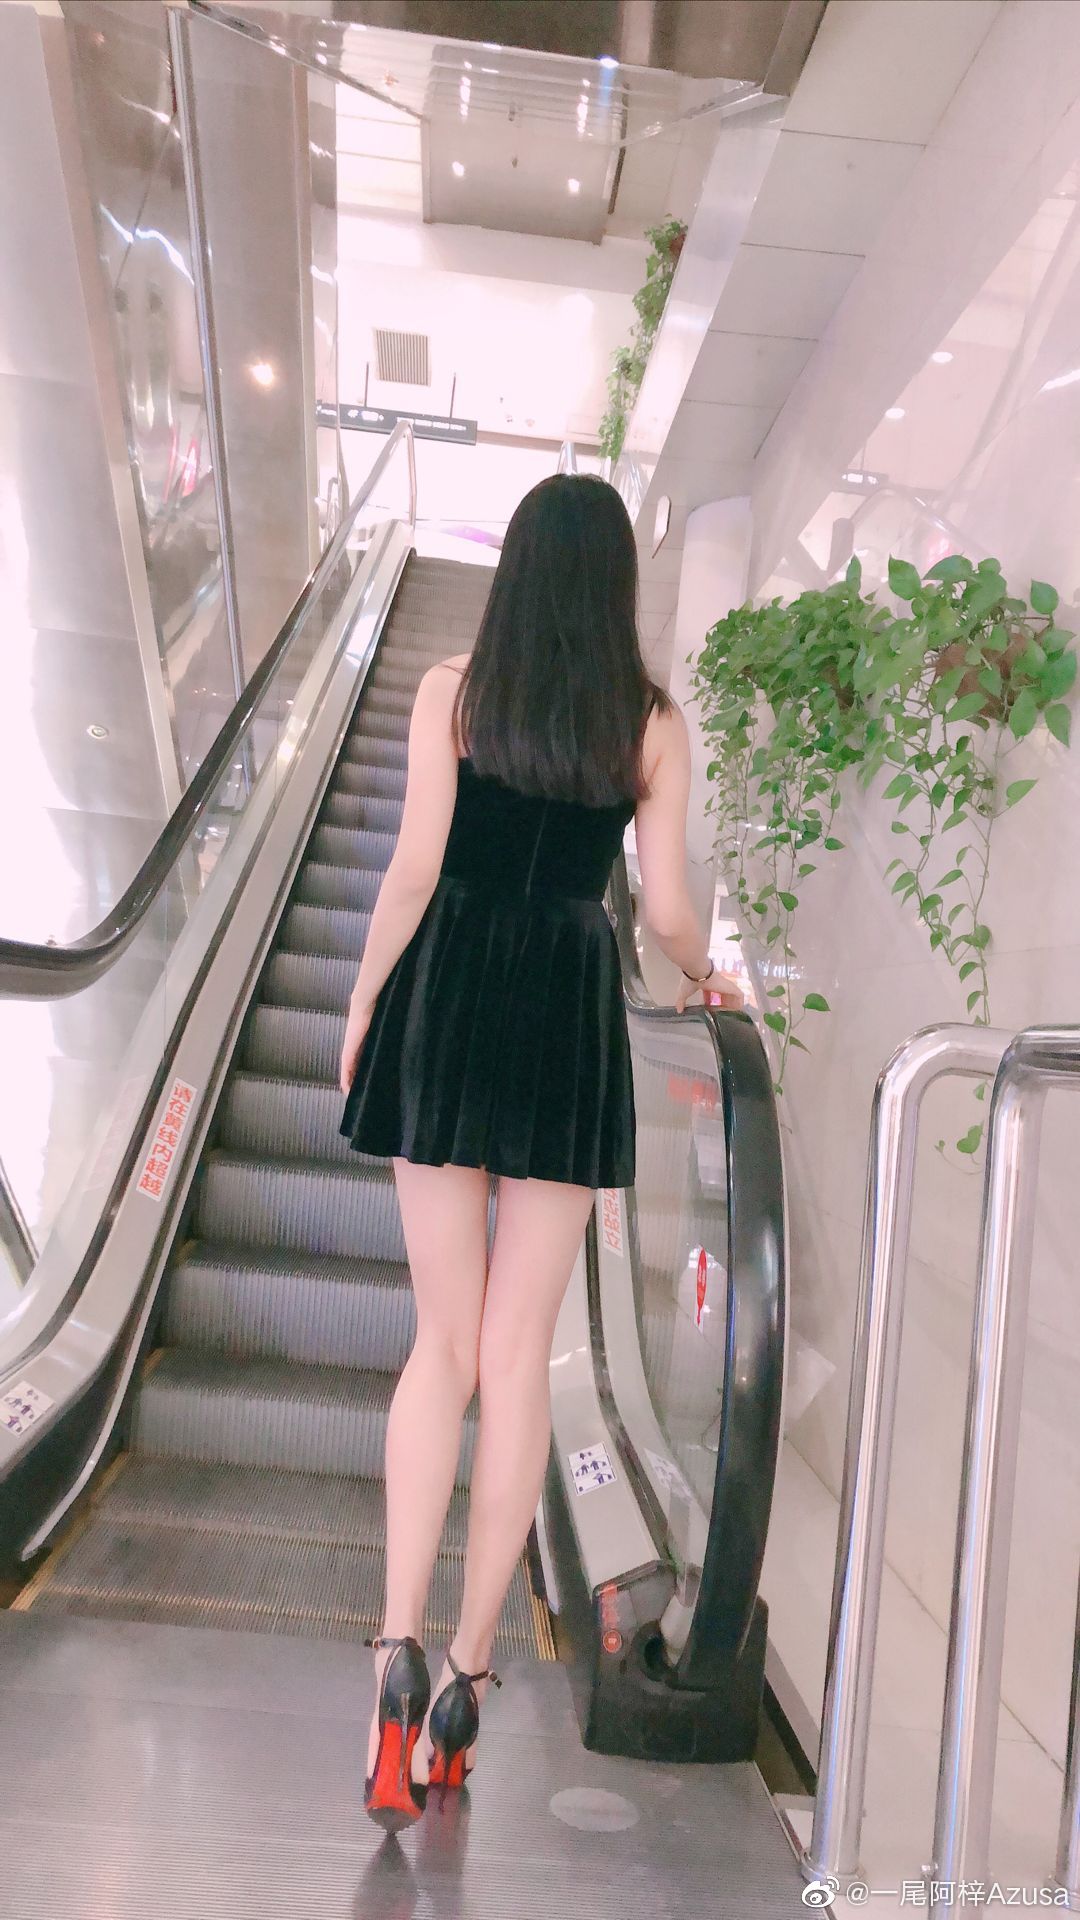 一尾阿梓Azusa Weibo 2019.5.159